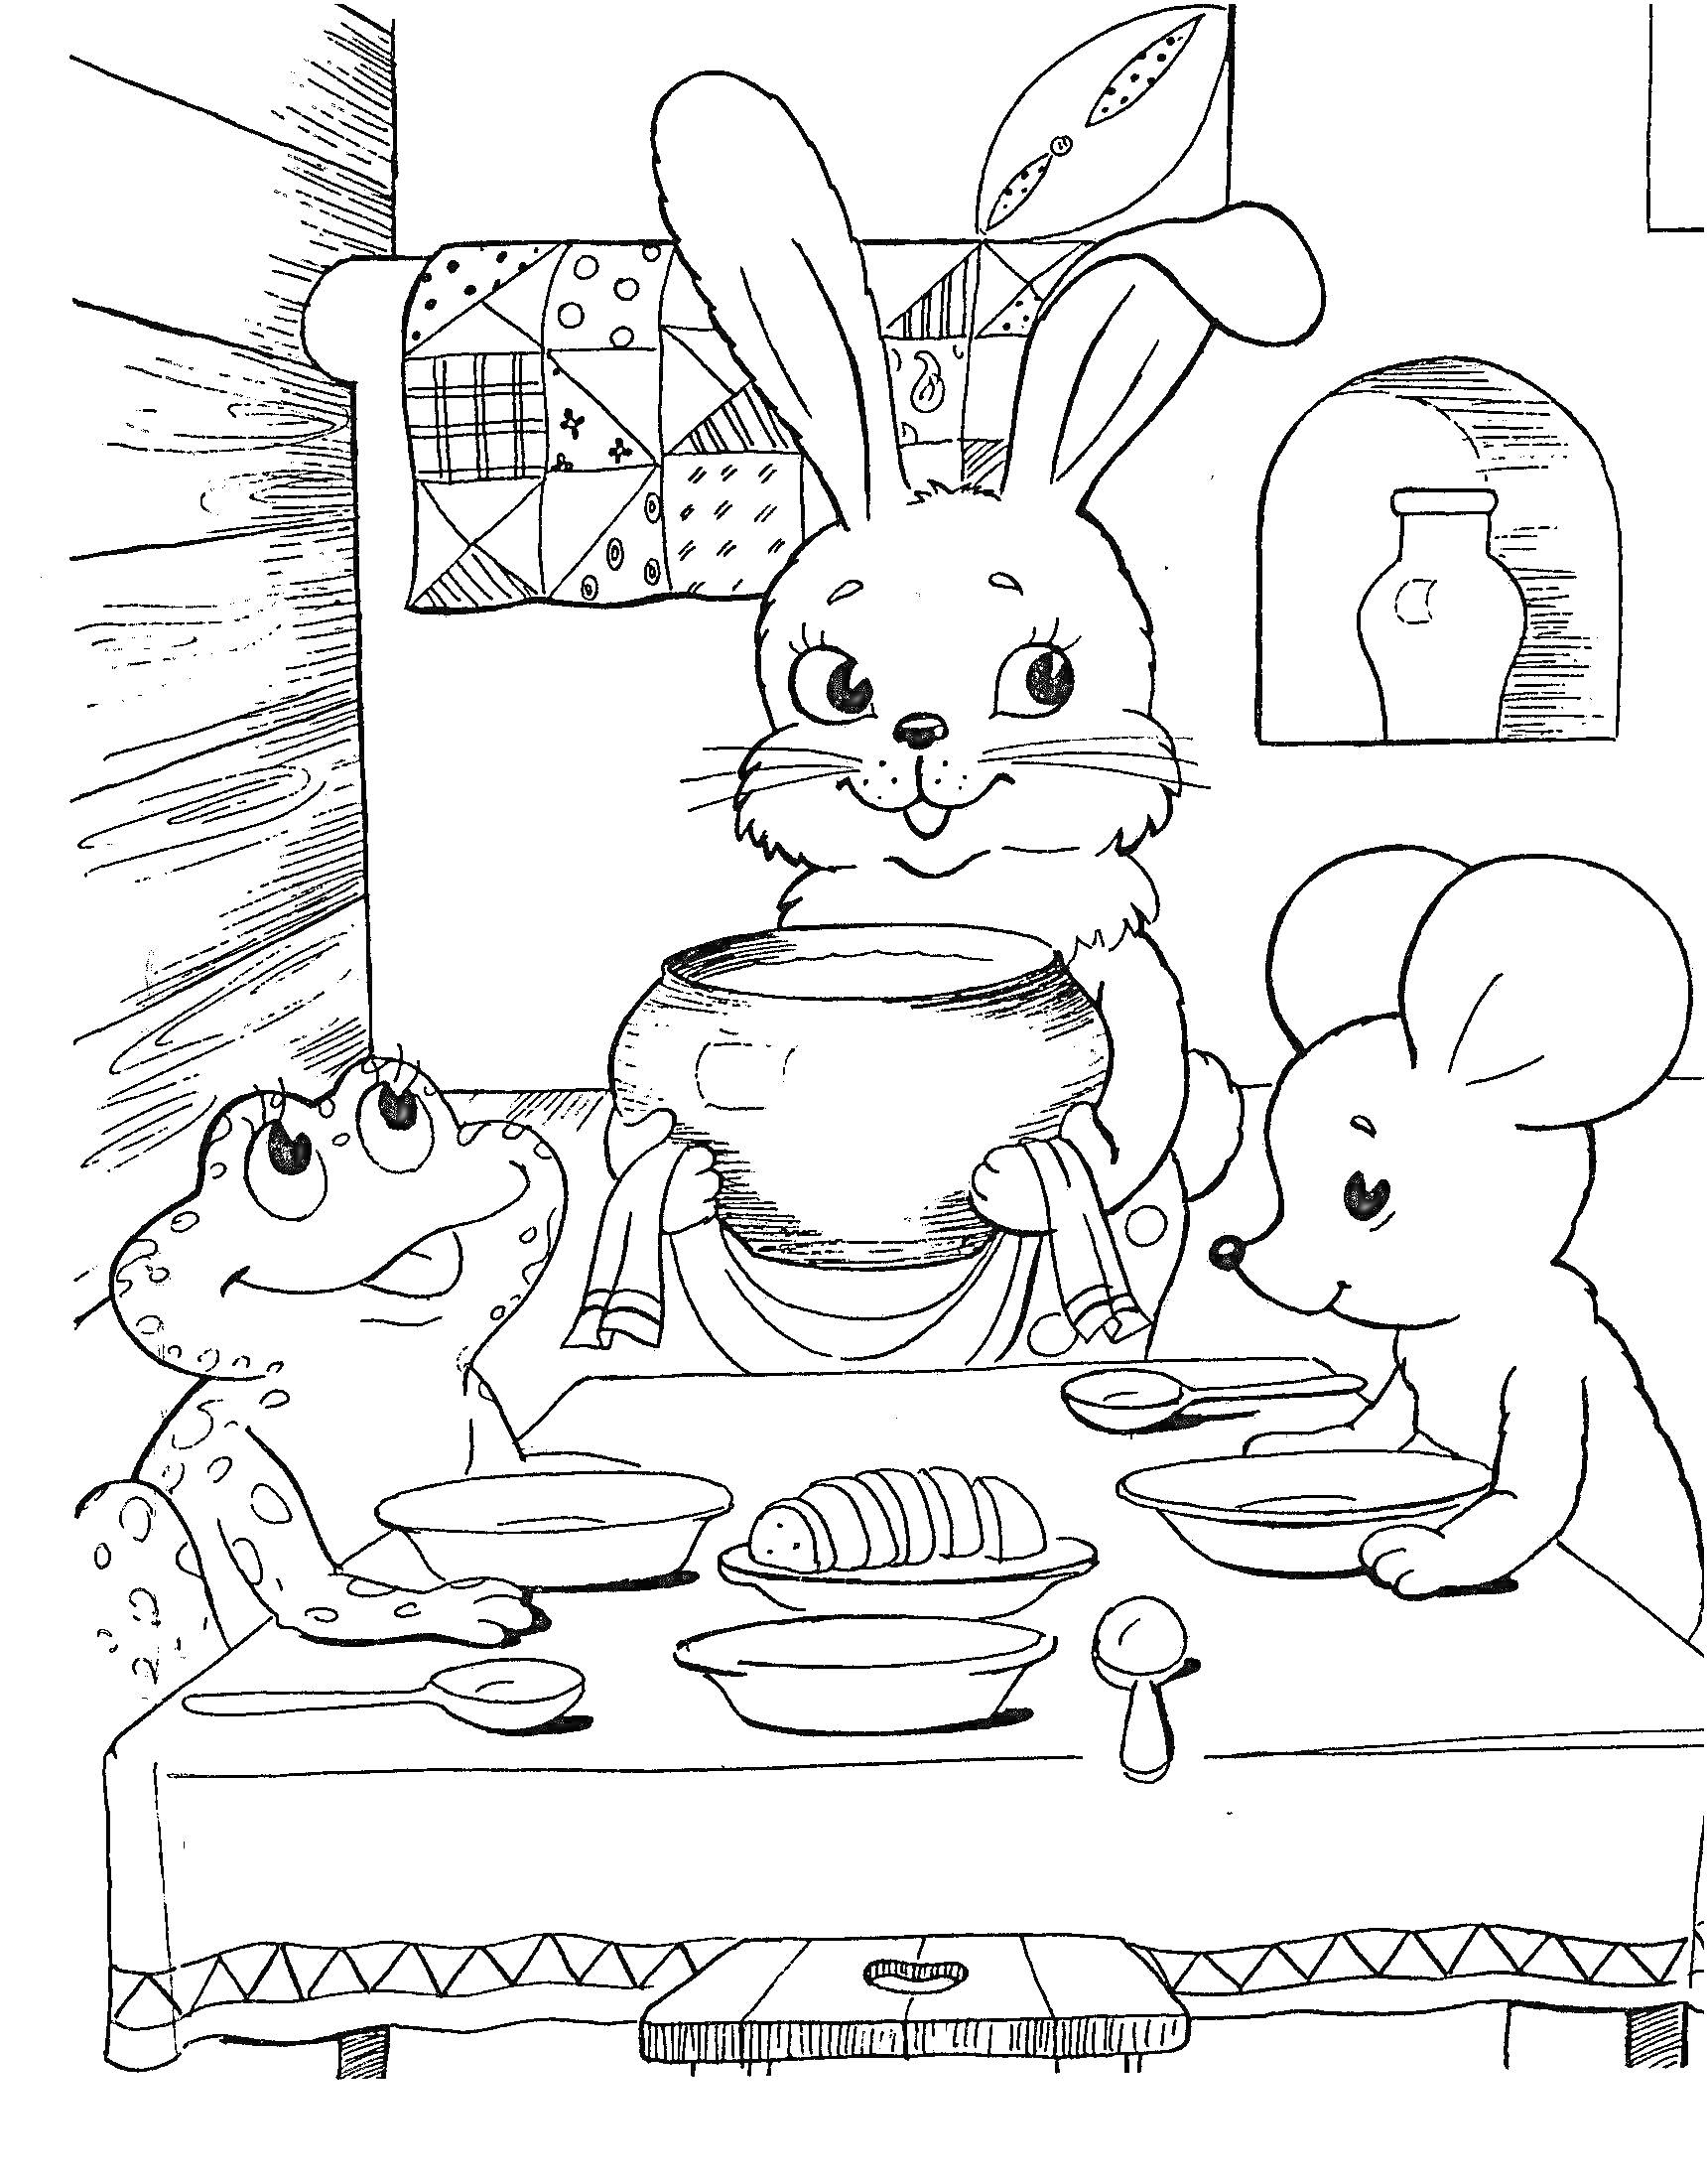 Раскраска Звери-друзья в теремке: зайчик с горшком, лягушка, мышка за столом накрытым салфеткой, с хлебом и тремя тарелками и ложками